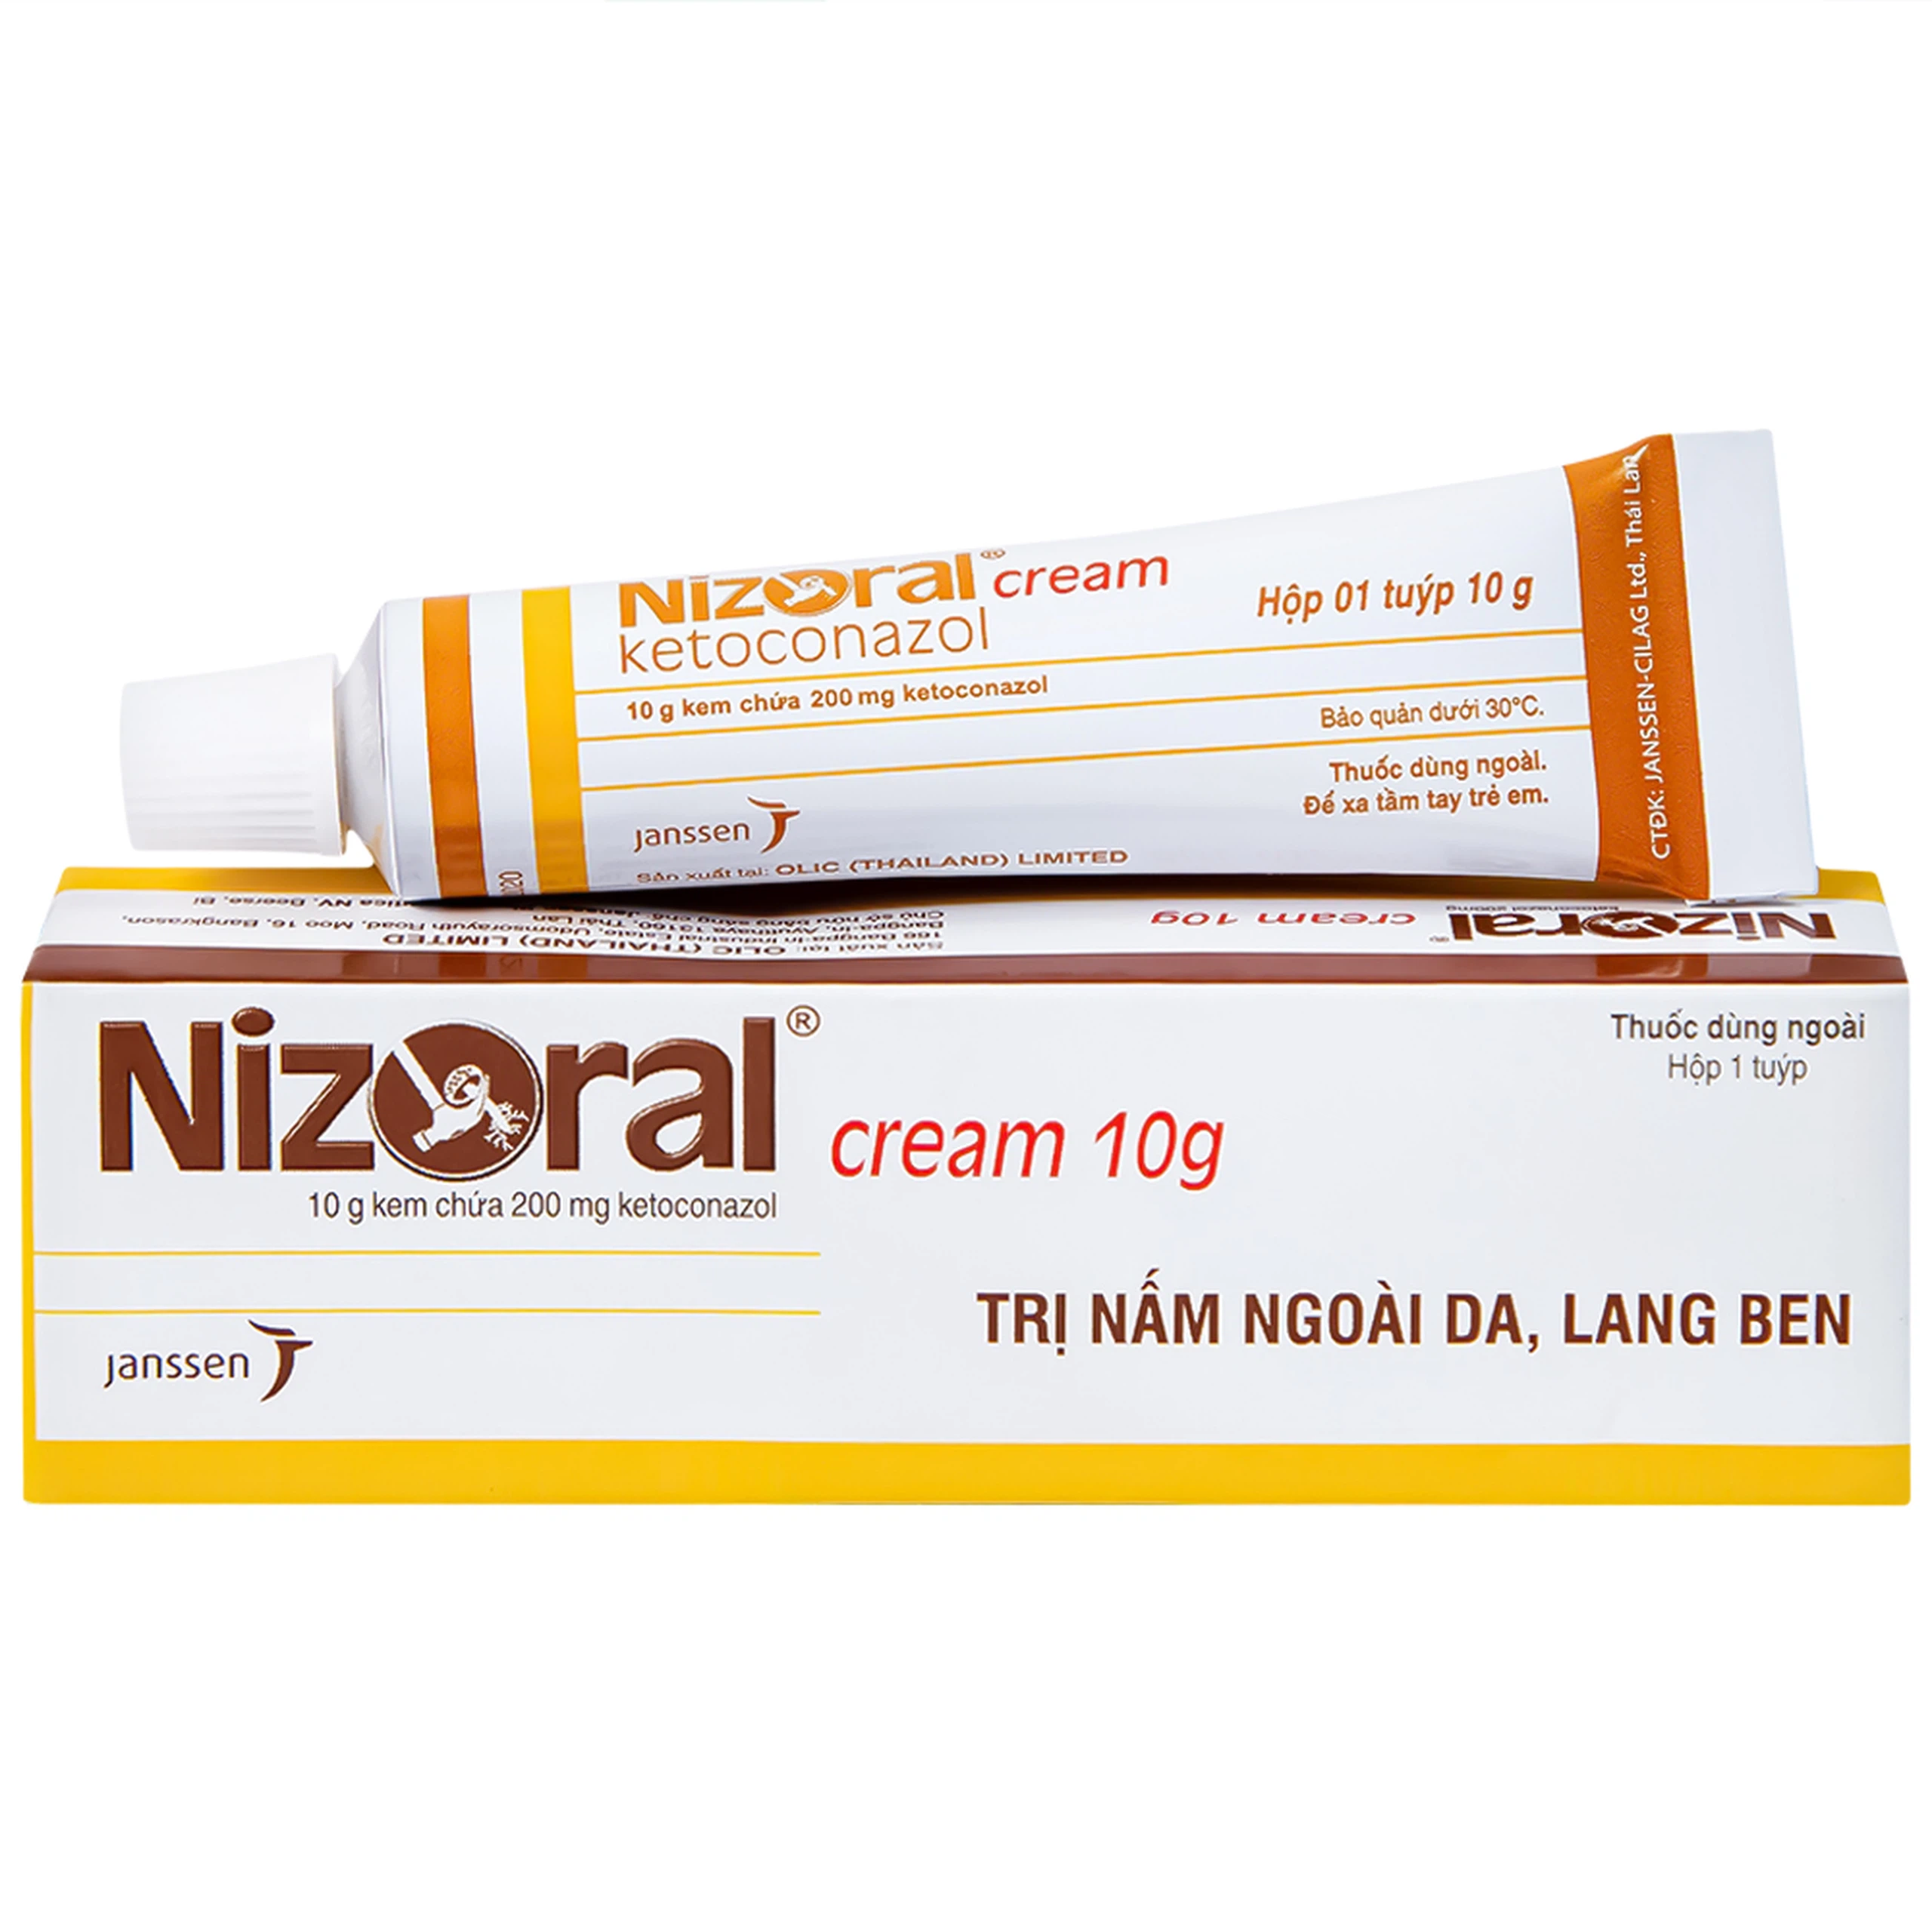 Kem bôi da Nizoral Cream Janssen điều trị nấm ngoài da, lang ben (10g)